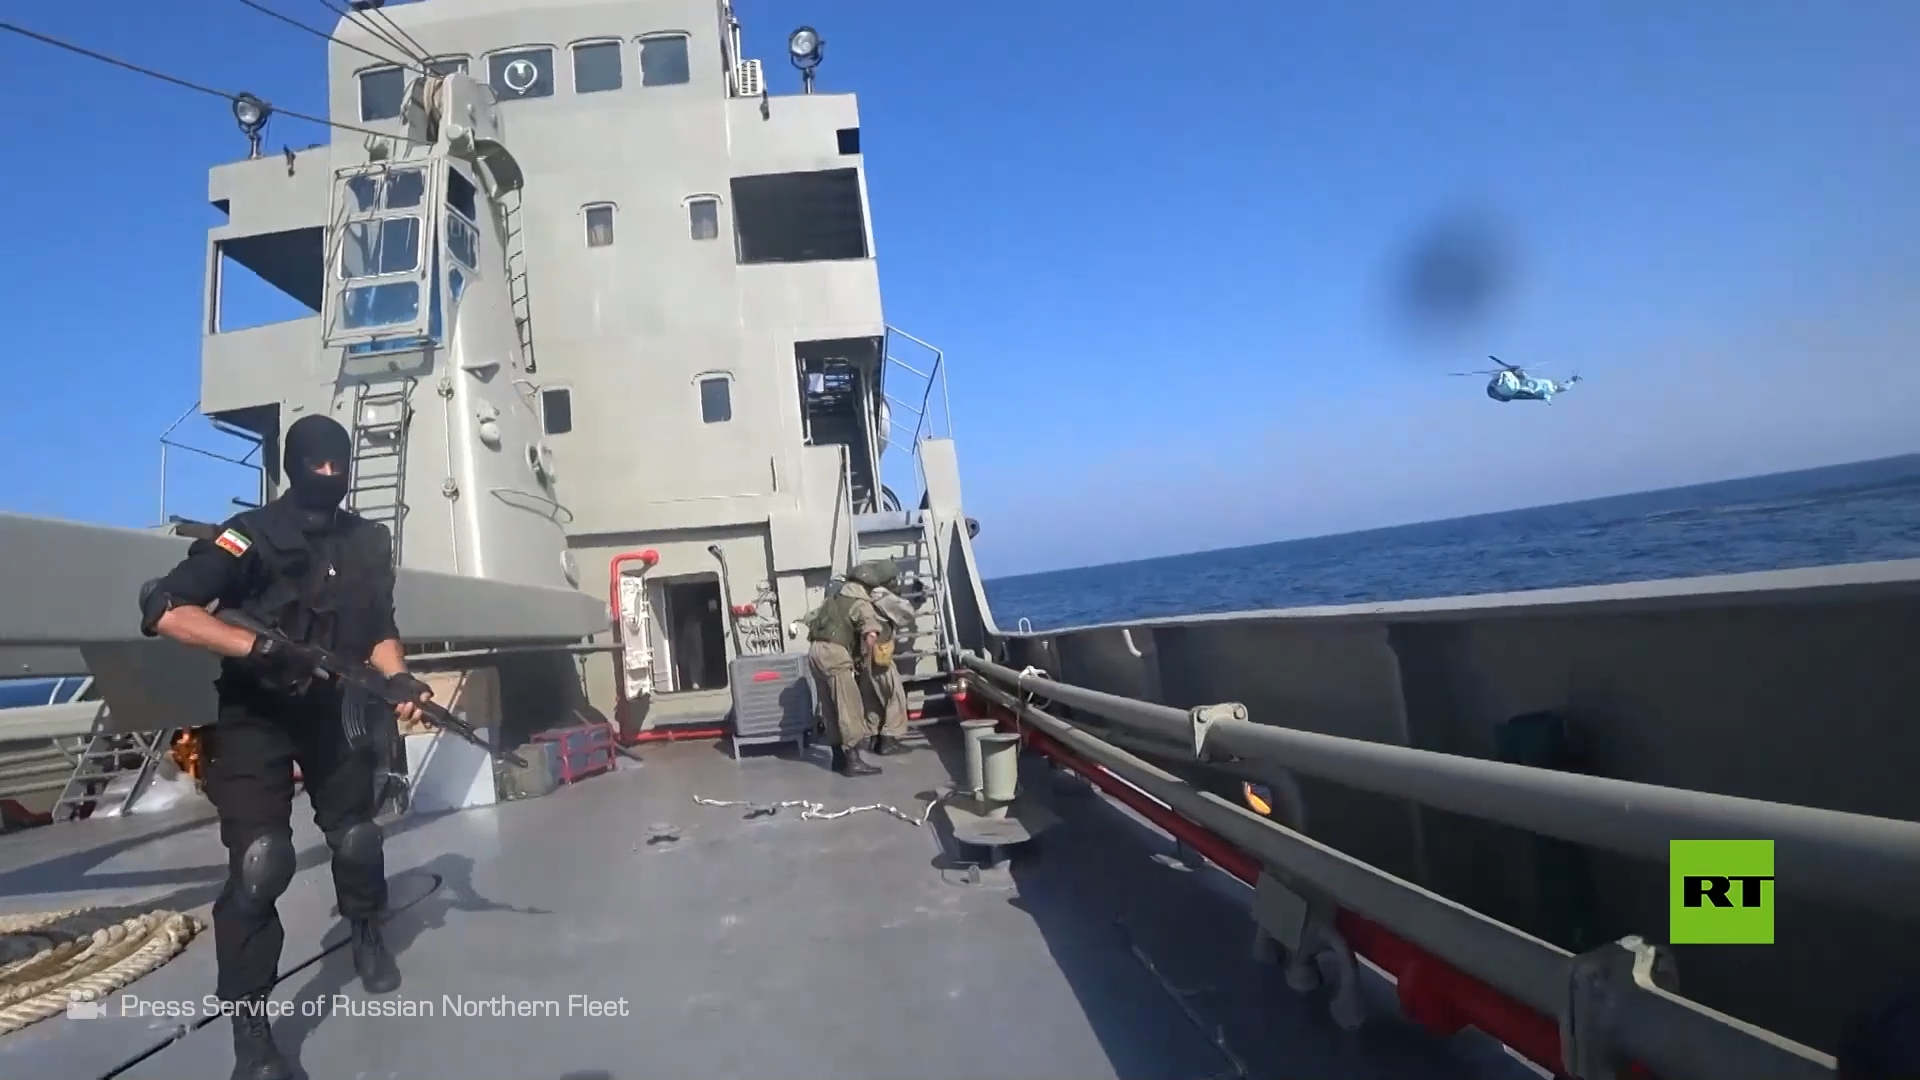 قصف أهداف وتحرير سفينة محتجزة أثناء التدريبات الروسية الإيرانية الصينية في بحر العرب